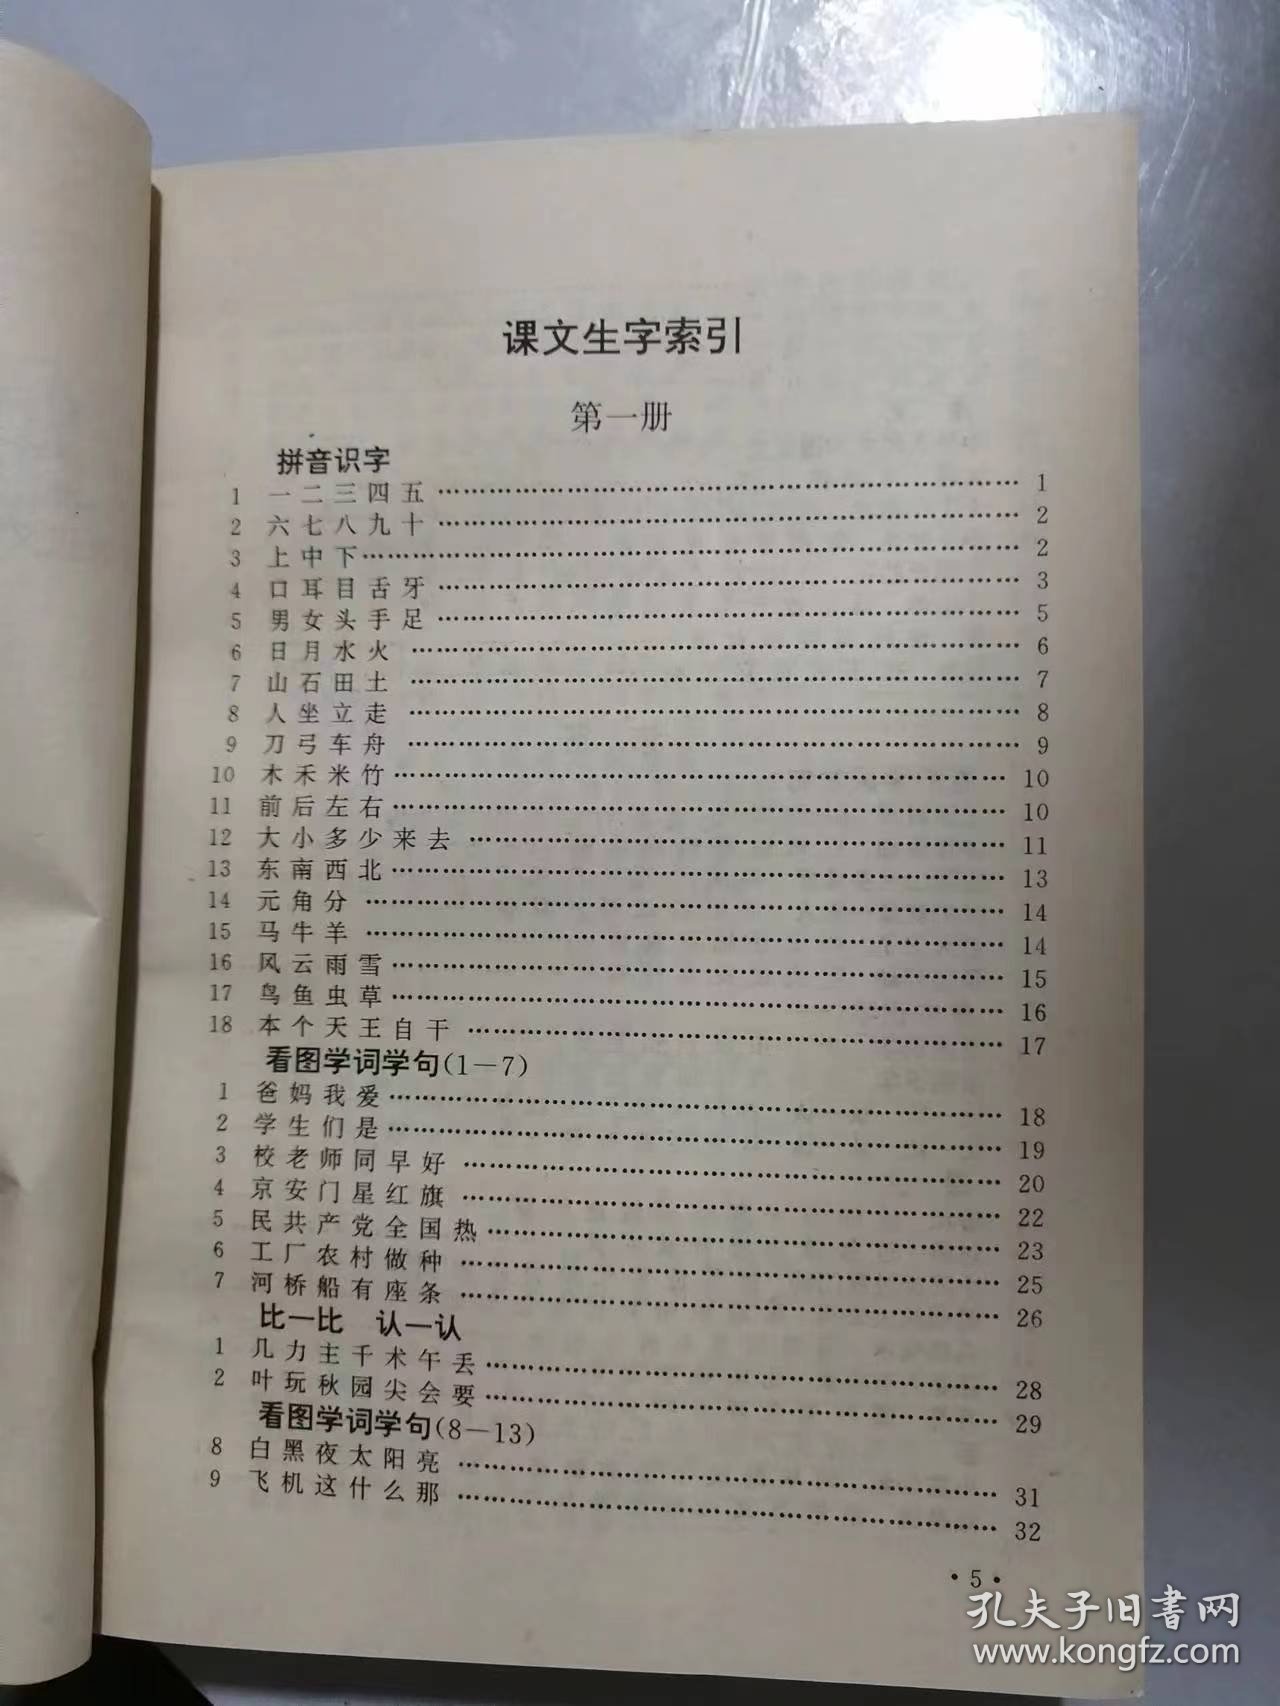 《小学语文配套实用字典》。